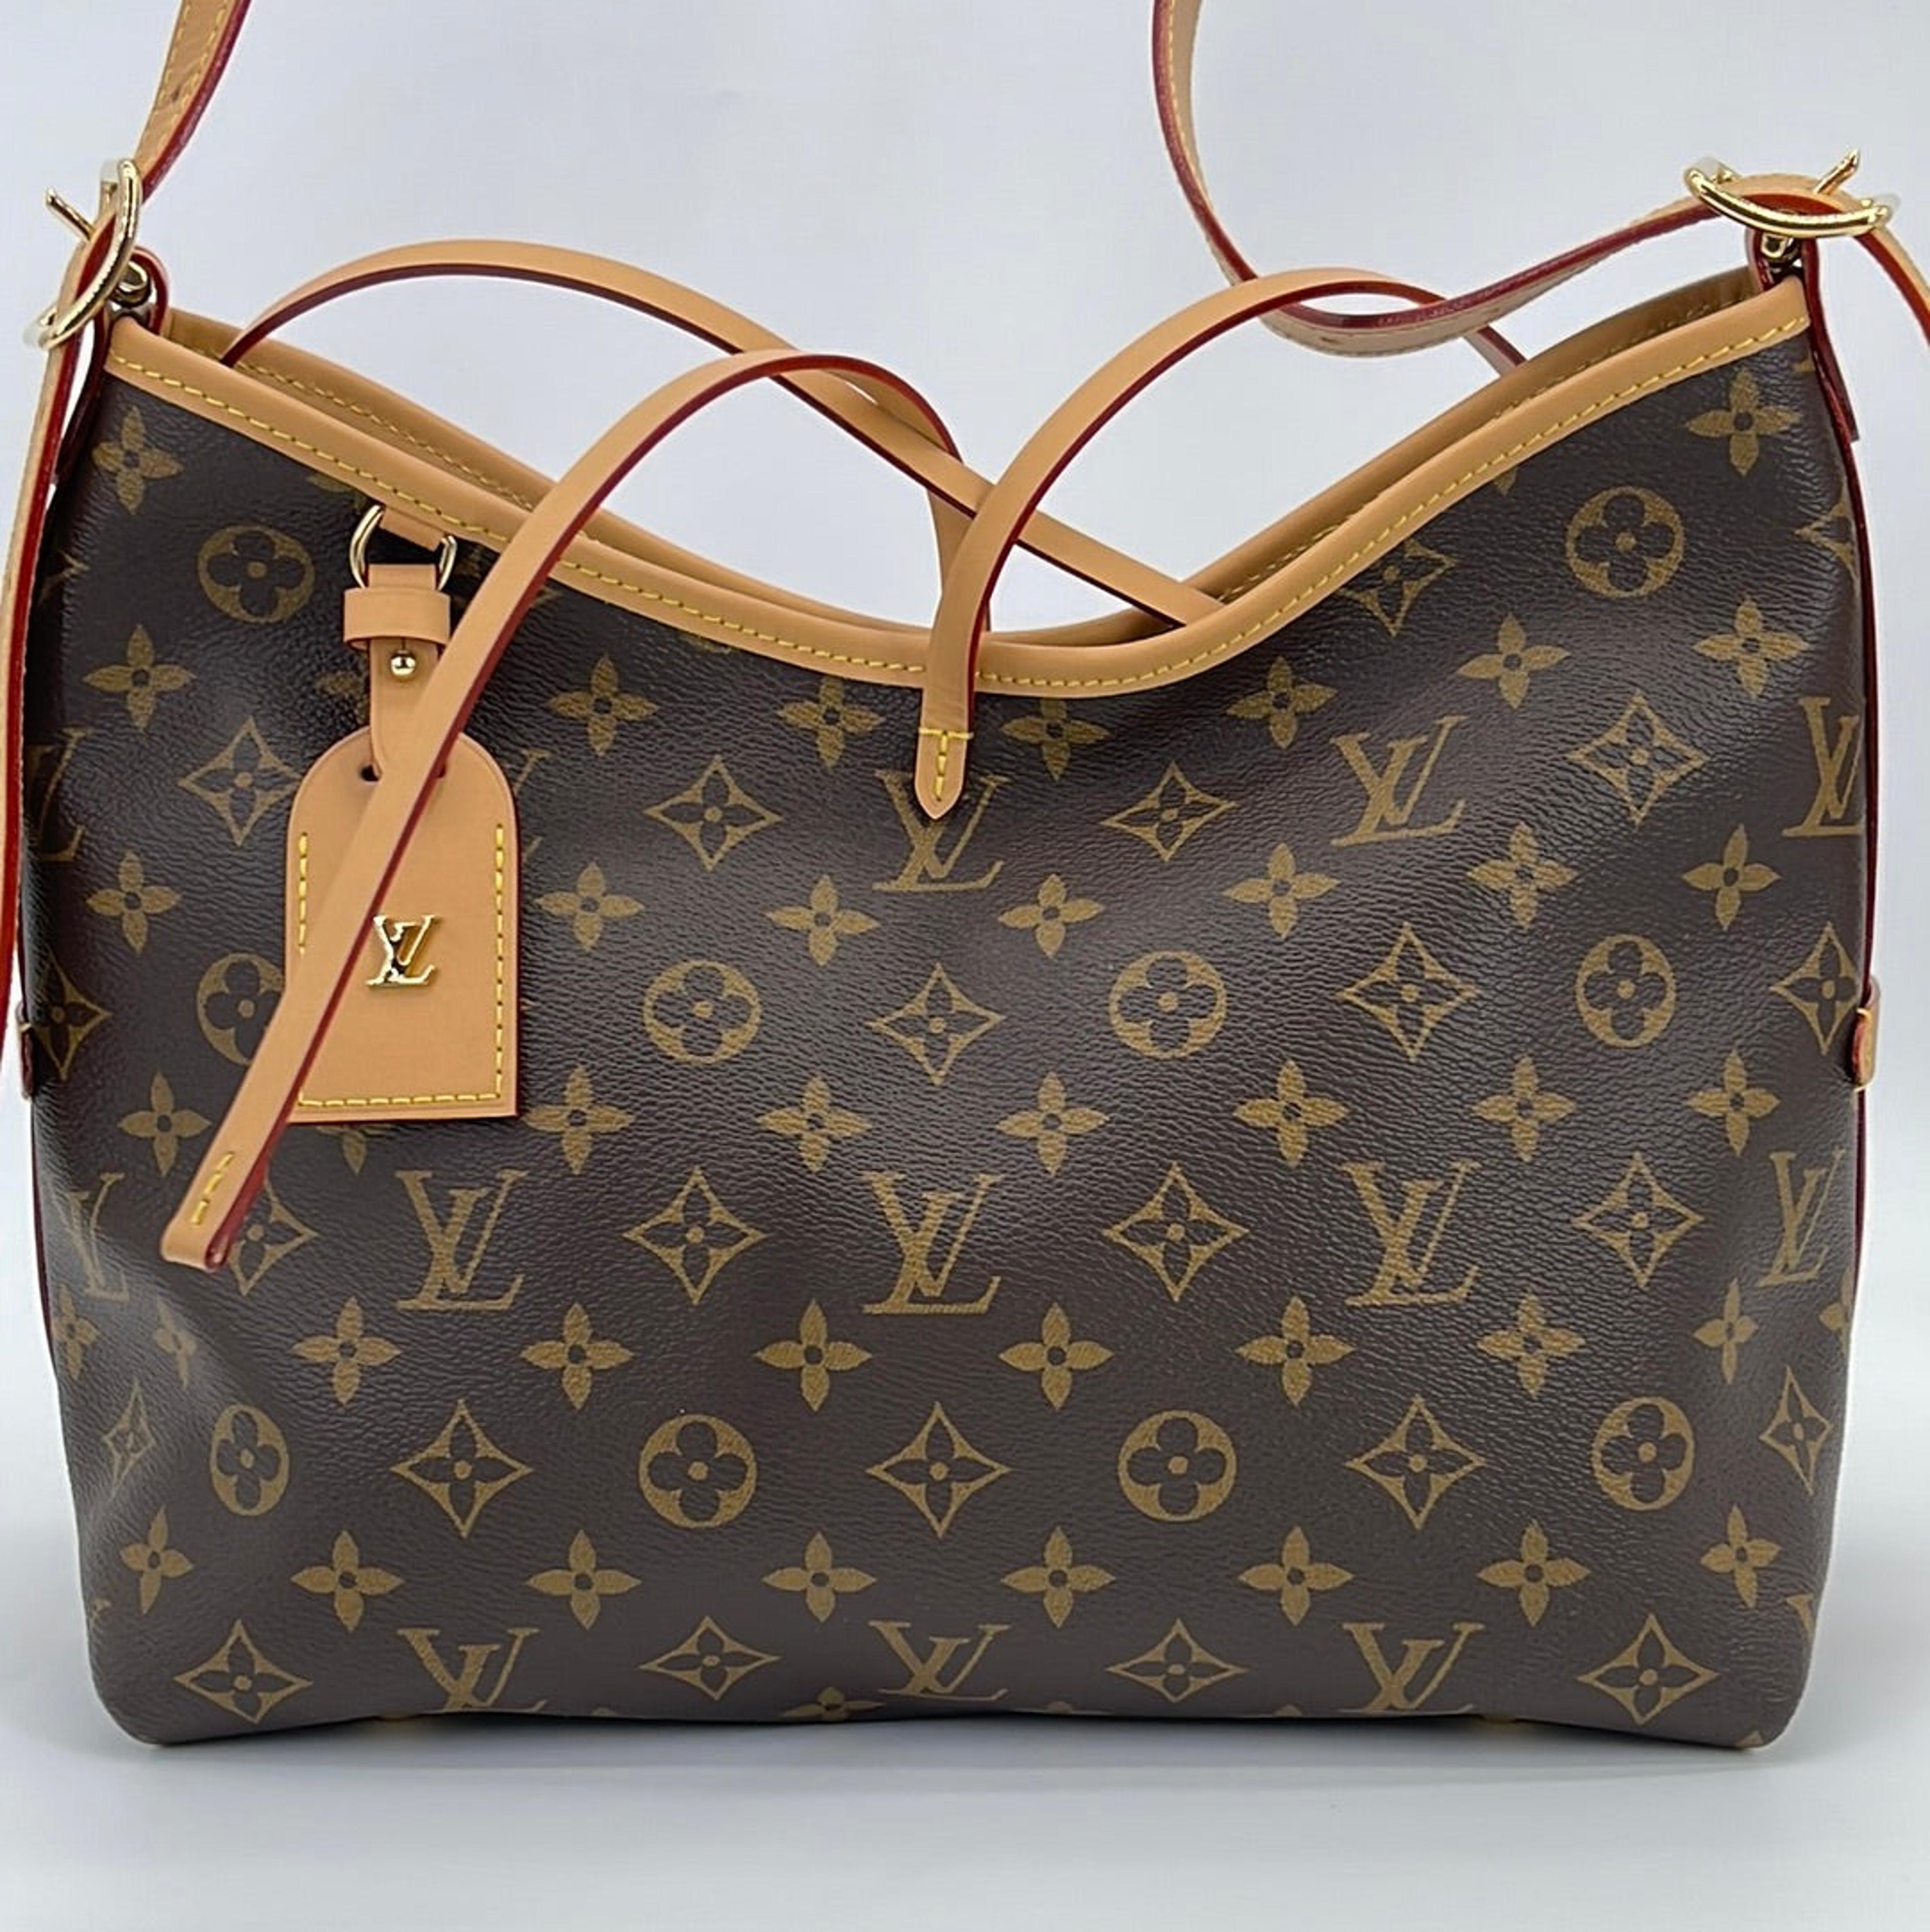 Louis Vuitton, Bags, Discontinued Louis Vuitton Delightful Pm